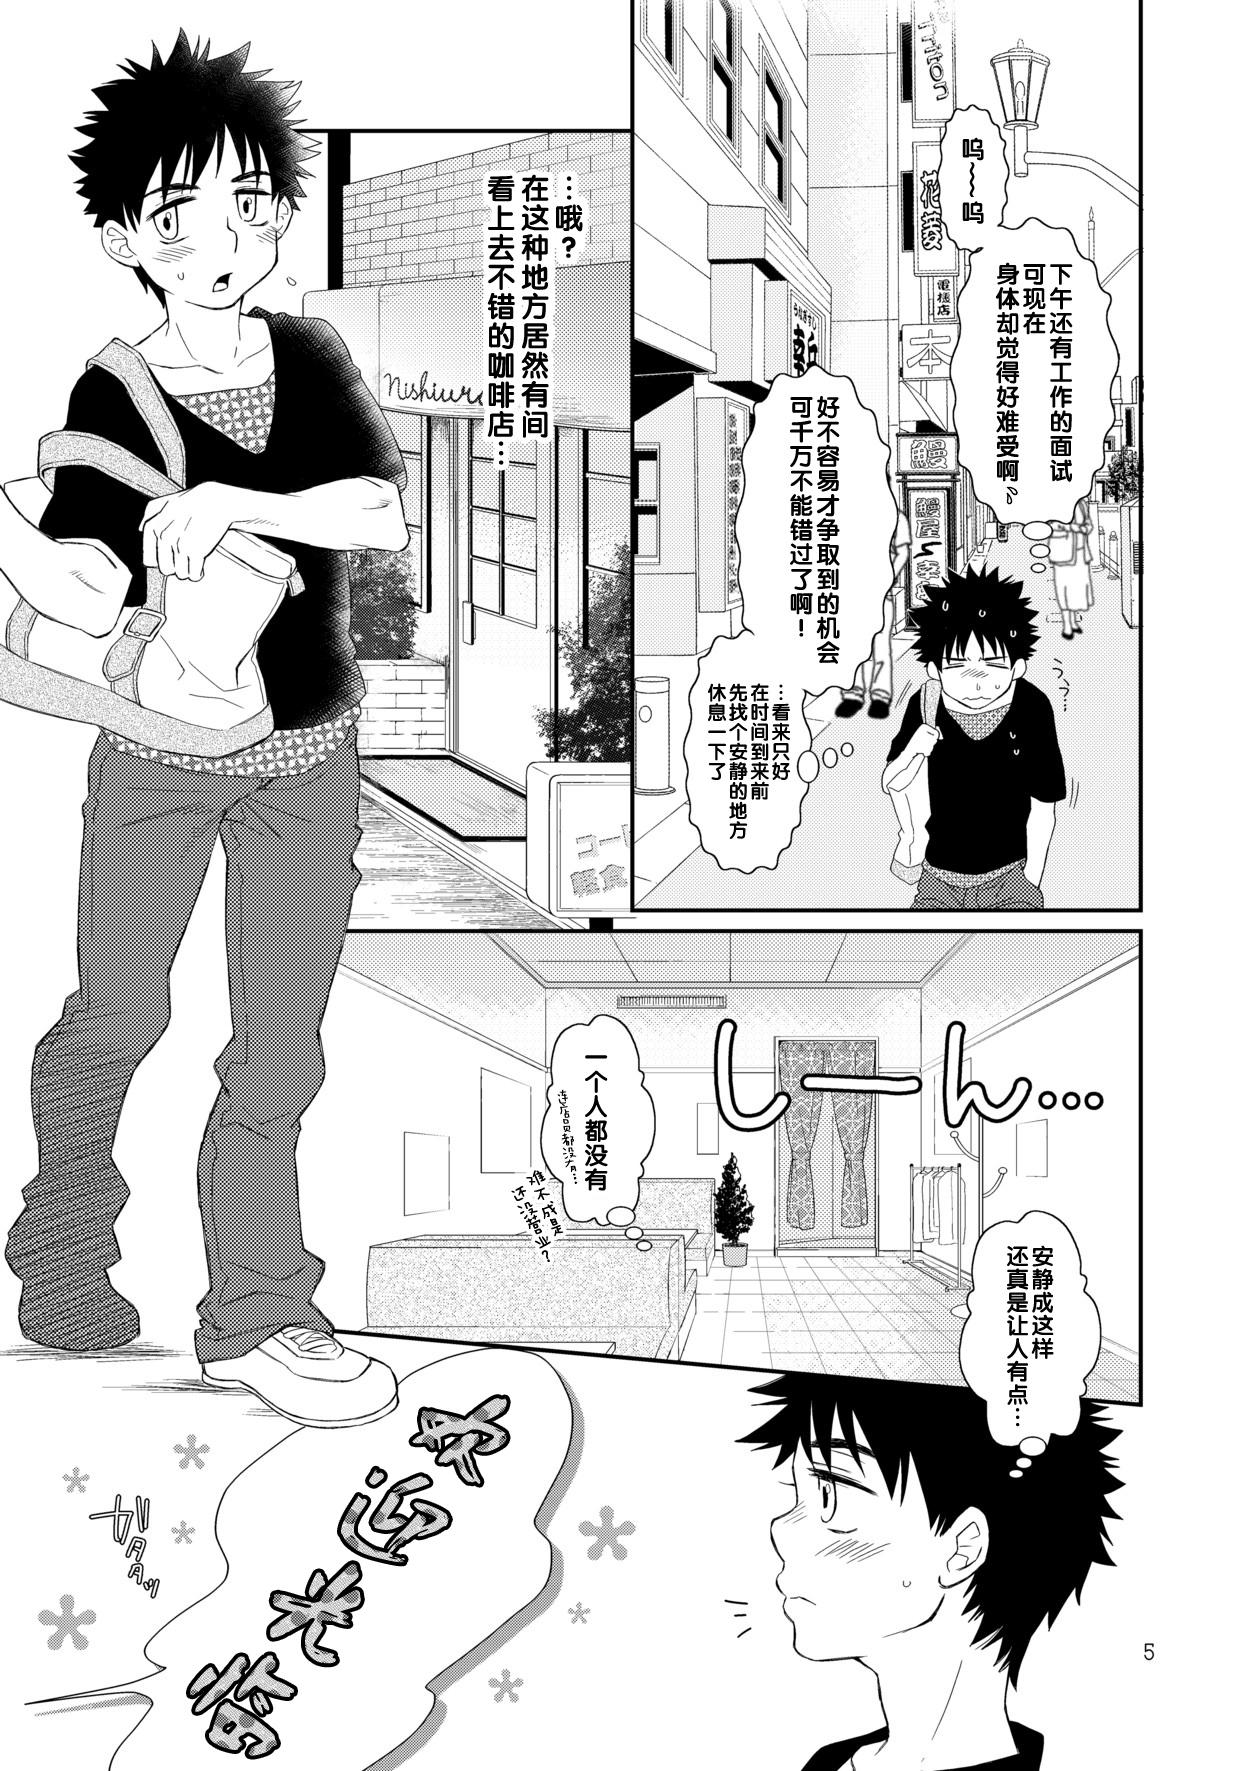 Adult Toys Tsuyudaku Fight! 9 - Ookiku furikabutte | big windup Cute - Page 5